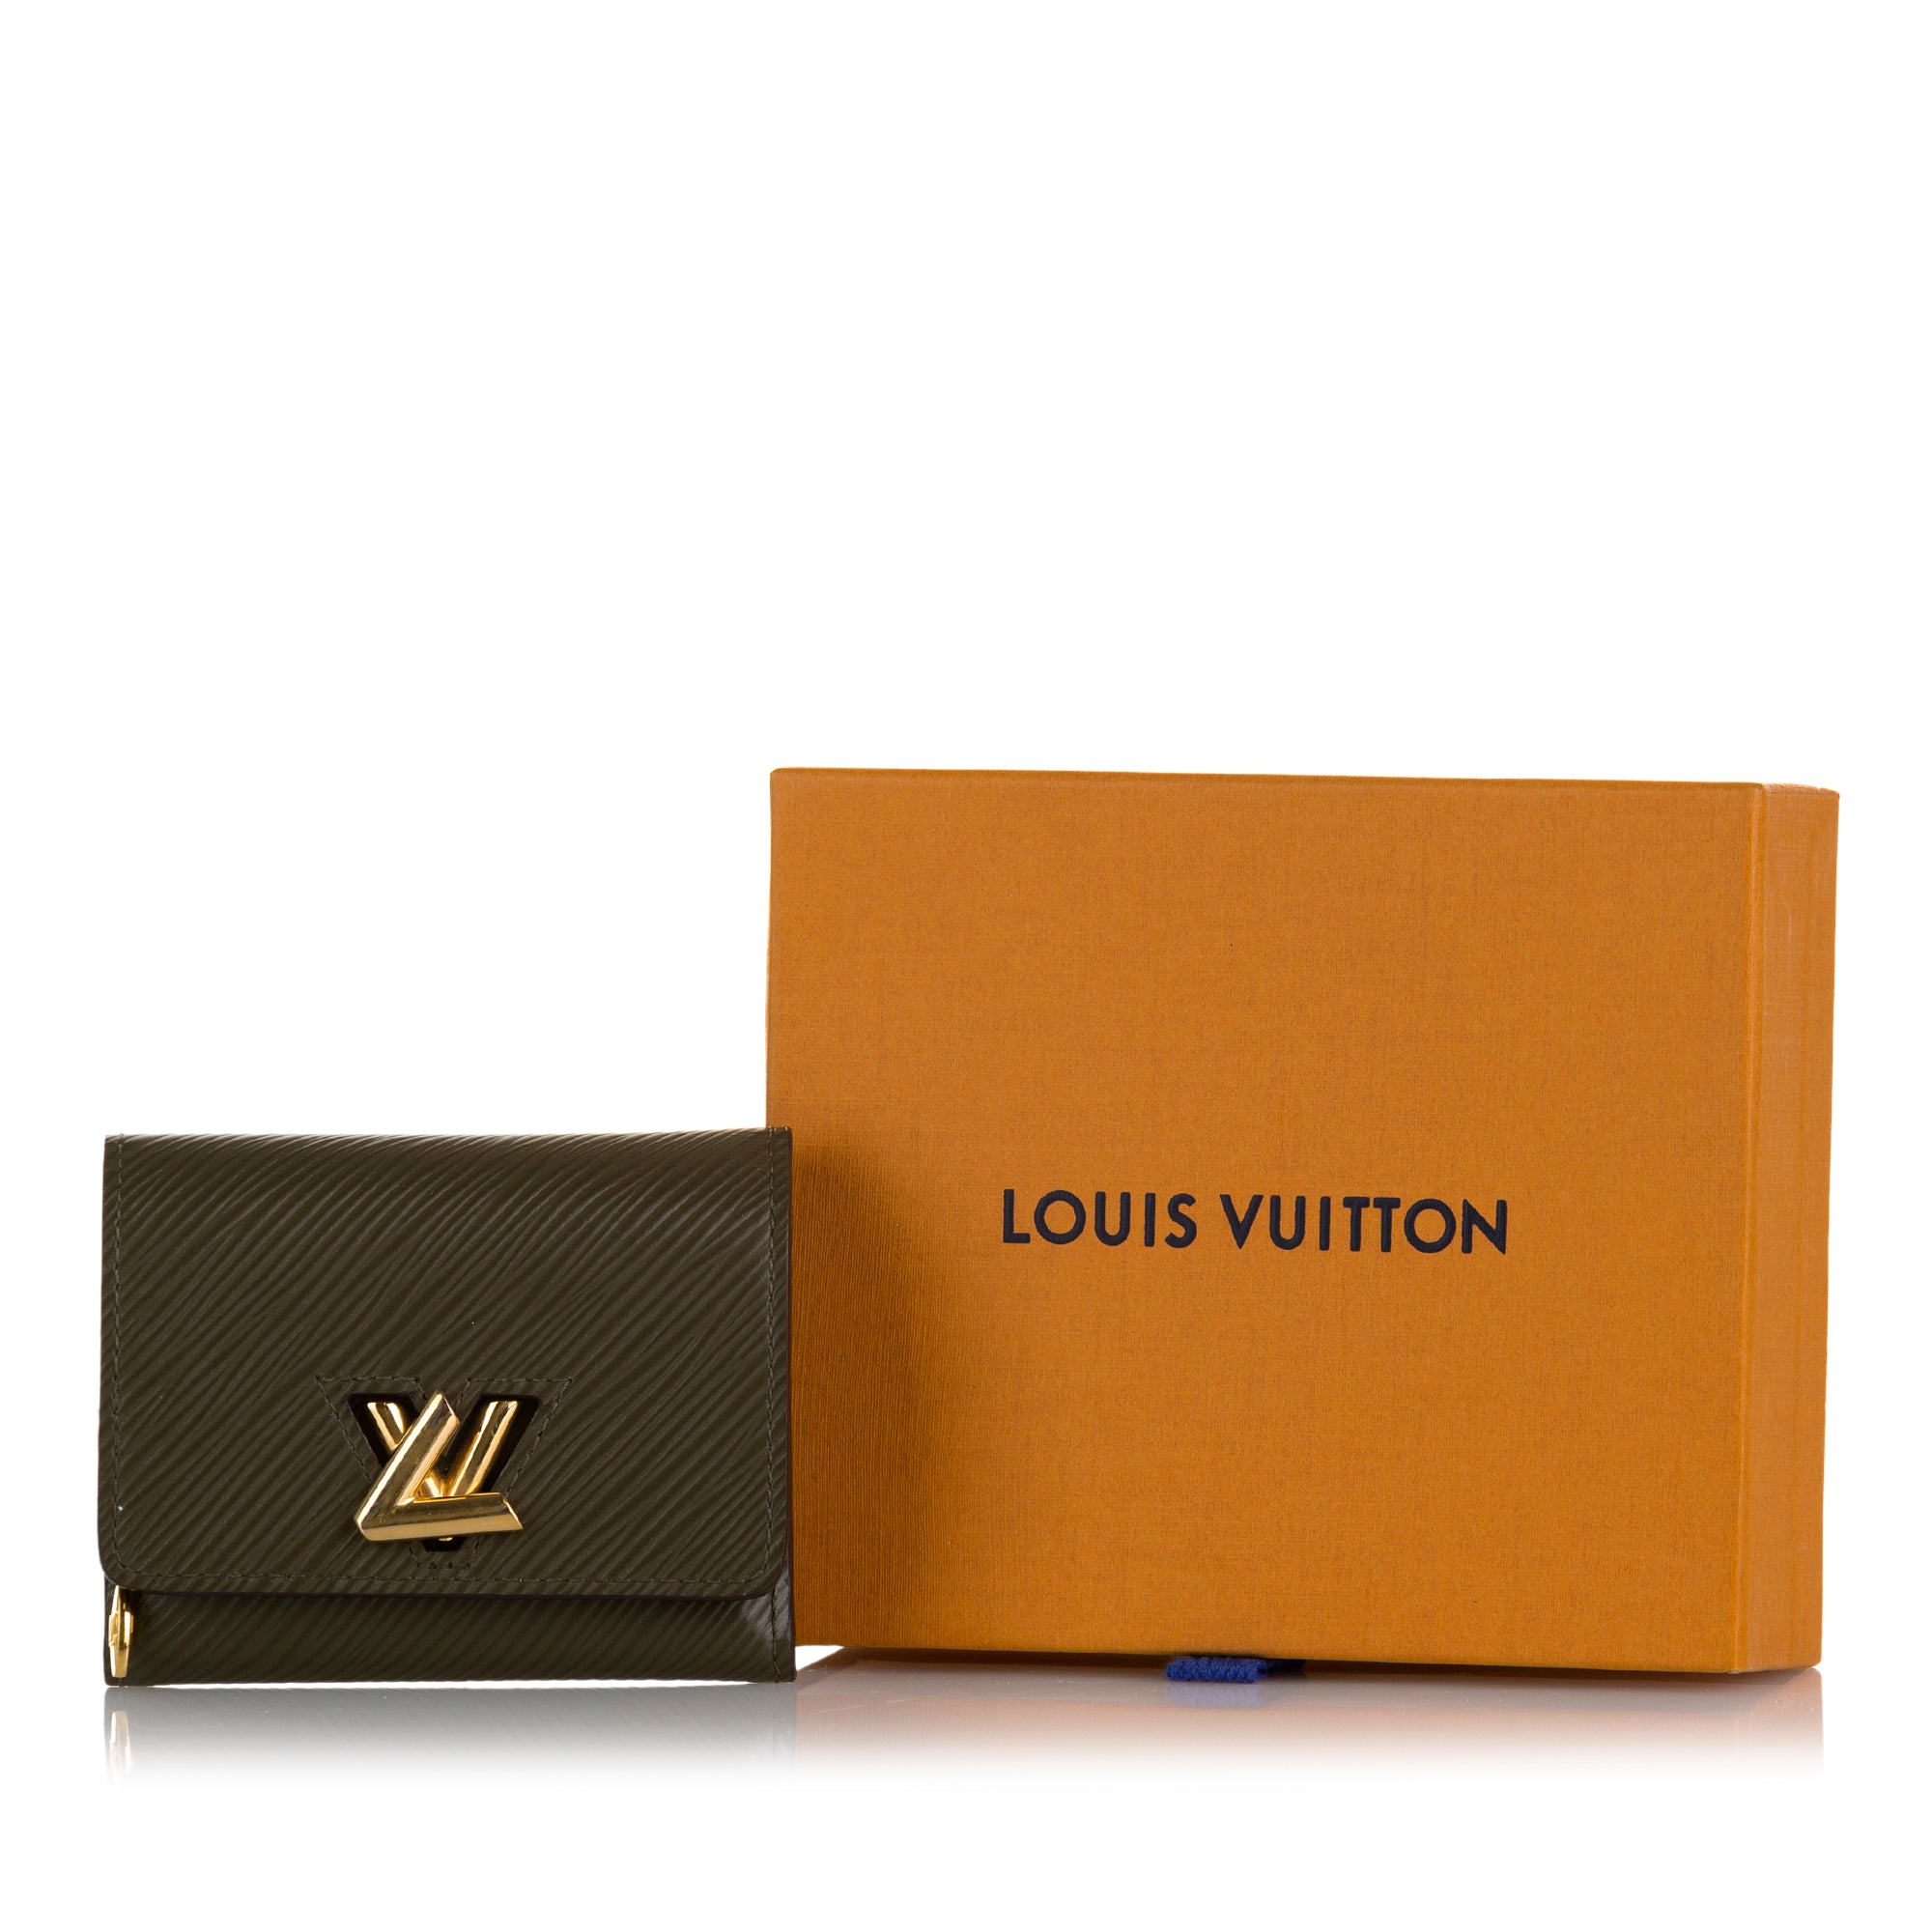 Louis Vuitton Monogram Jungle Collection, AmaflightschoolShops Revival